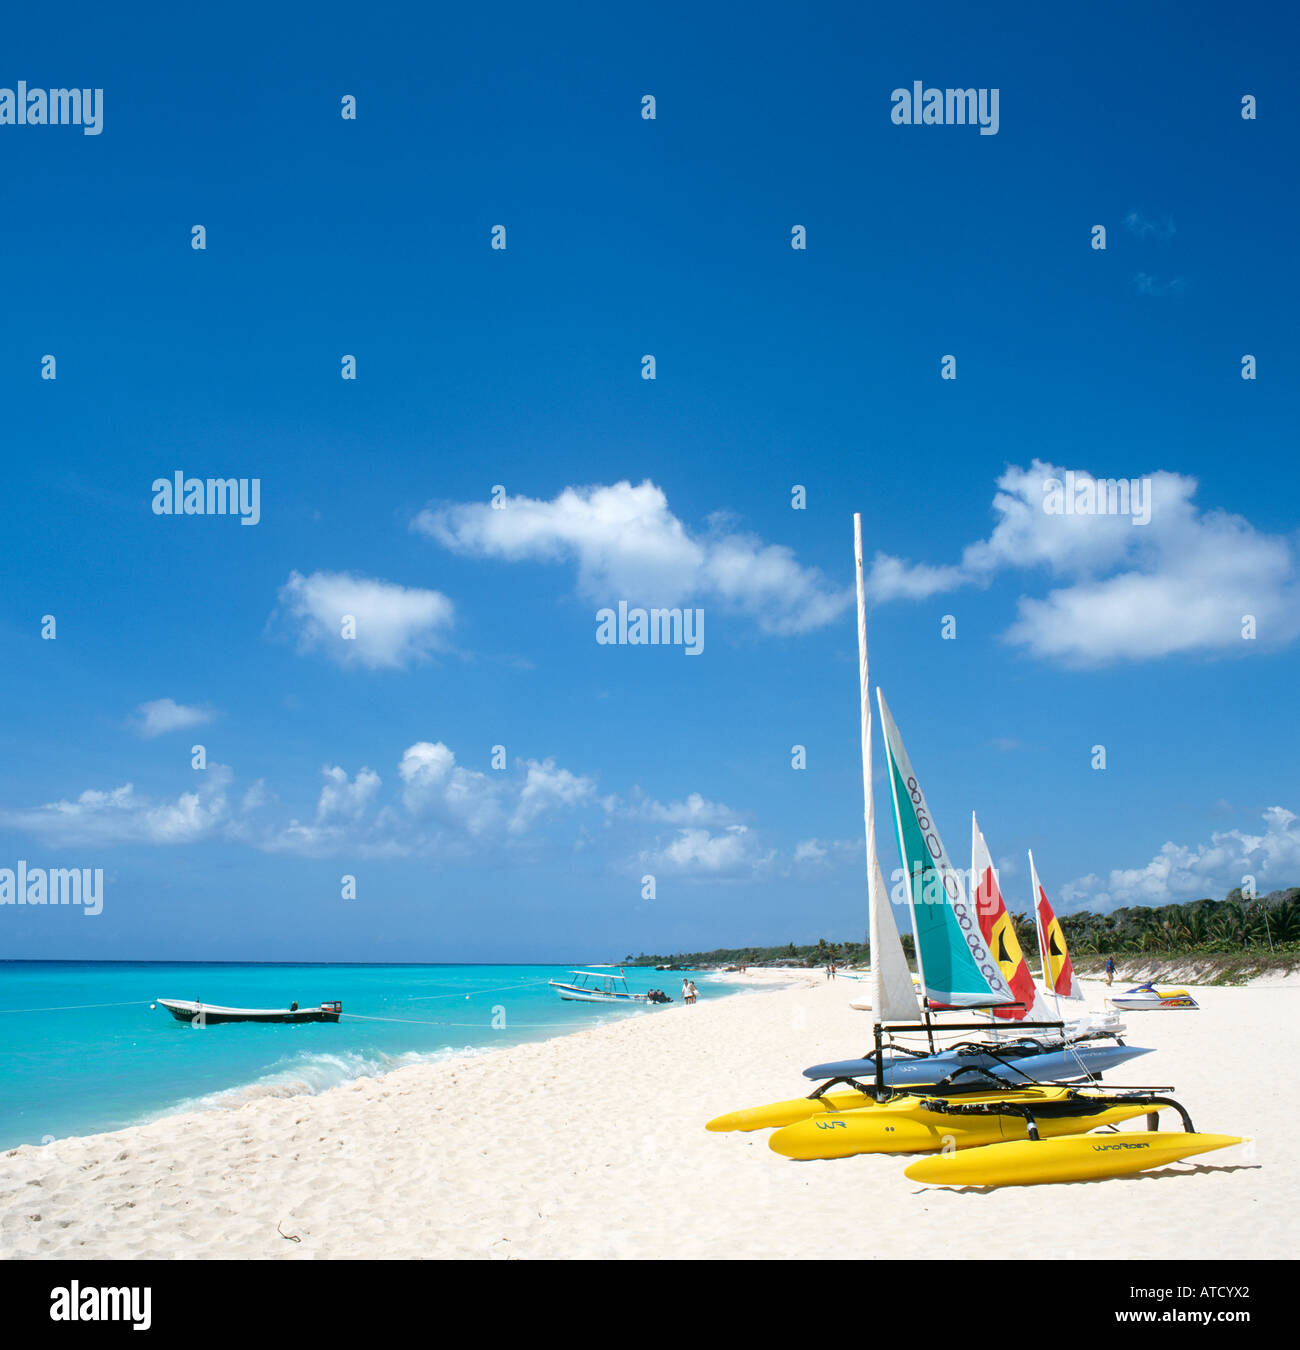 Playacar Beach, Playa del Carmen, Mayan Riviera, Quintana Roo, Yucatan Peninsula, Mexico Stock Photo